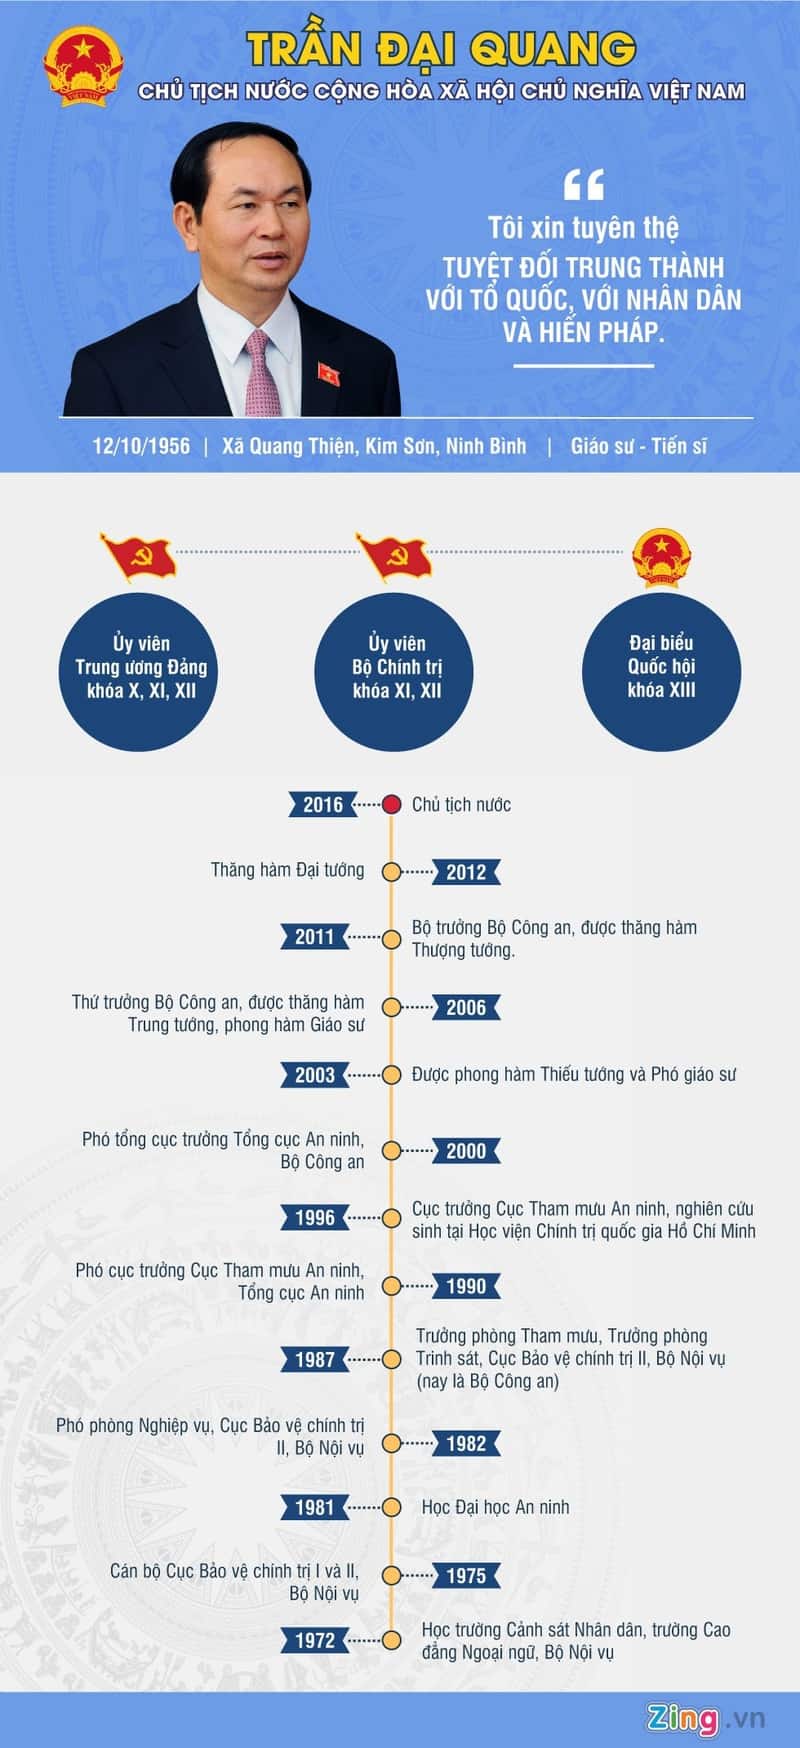 Infographic_Chu_Tich_Nuoc_2016_Tran_Dai_Quang